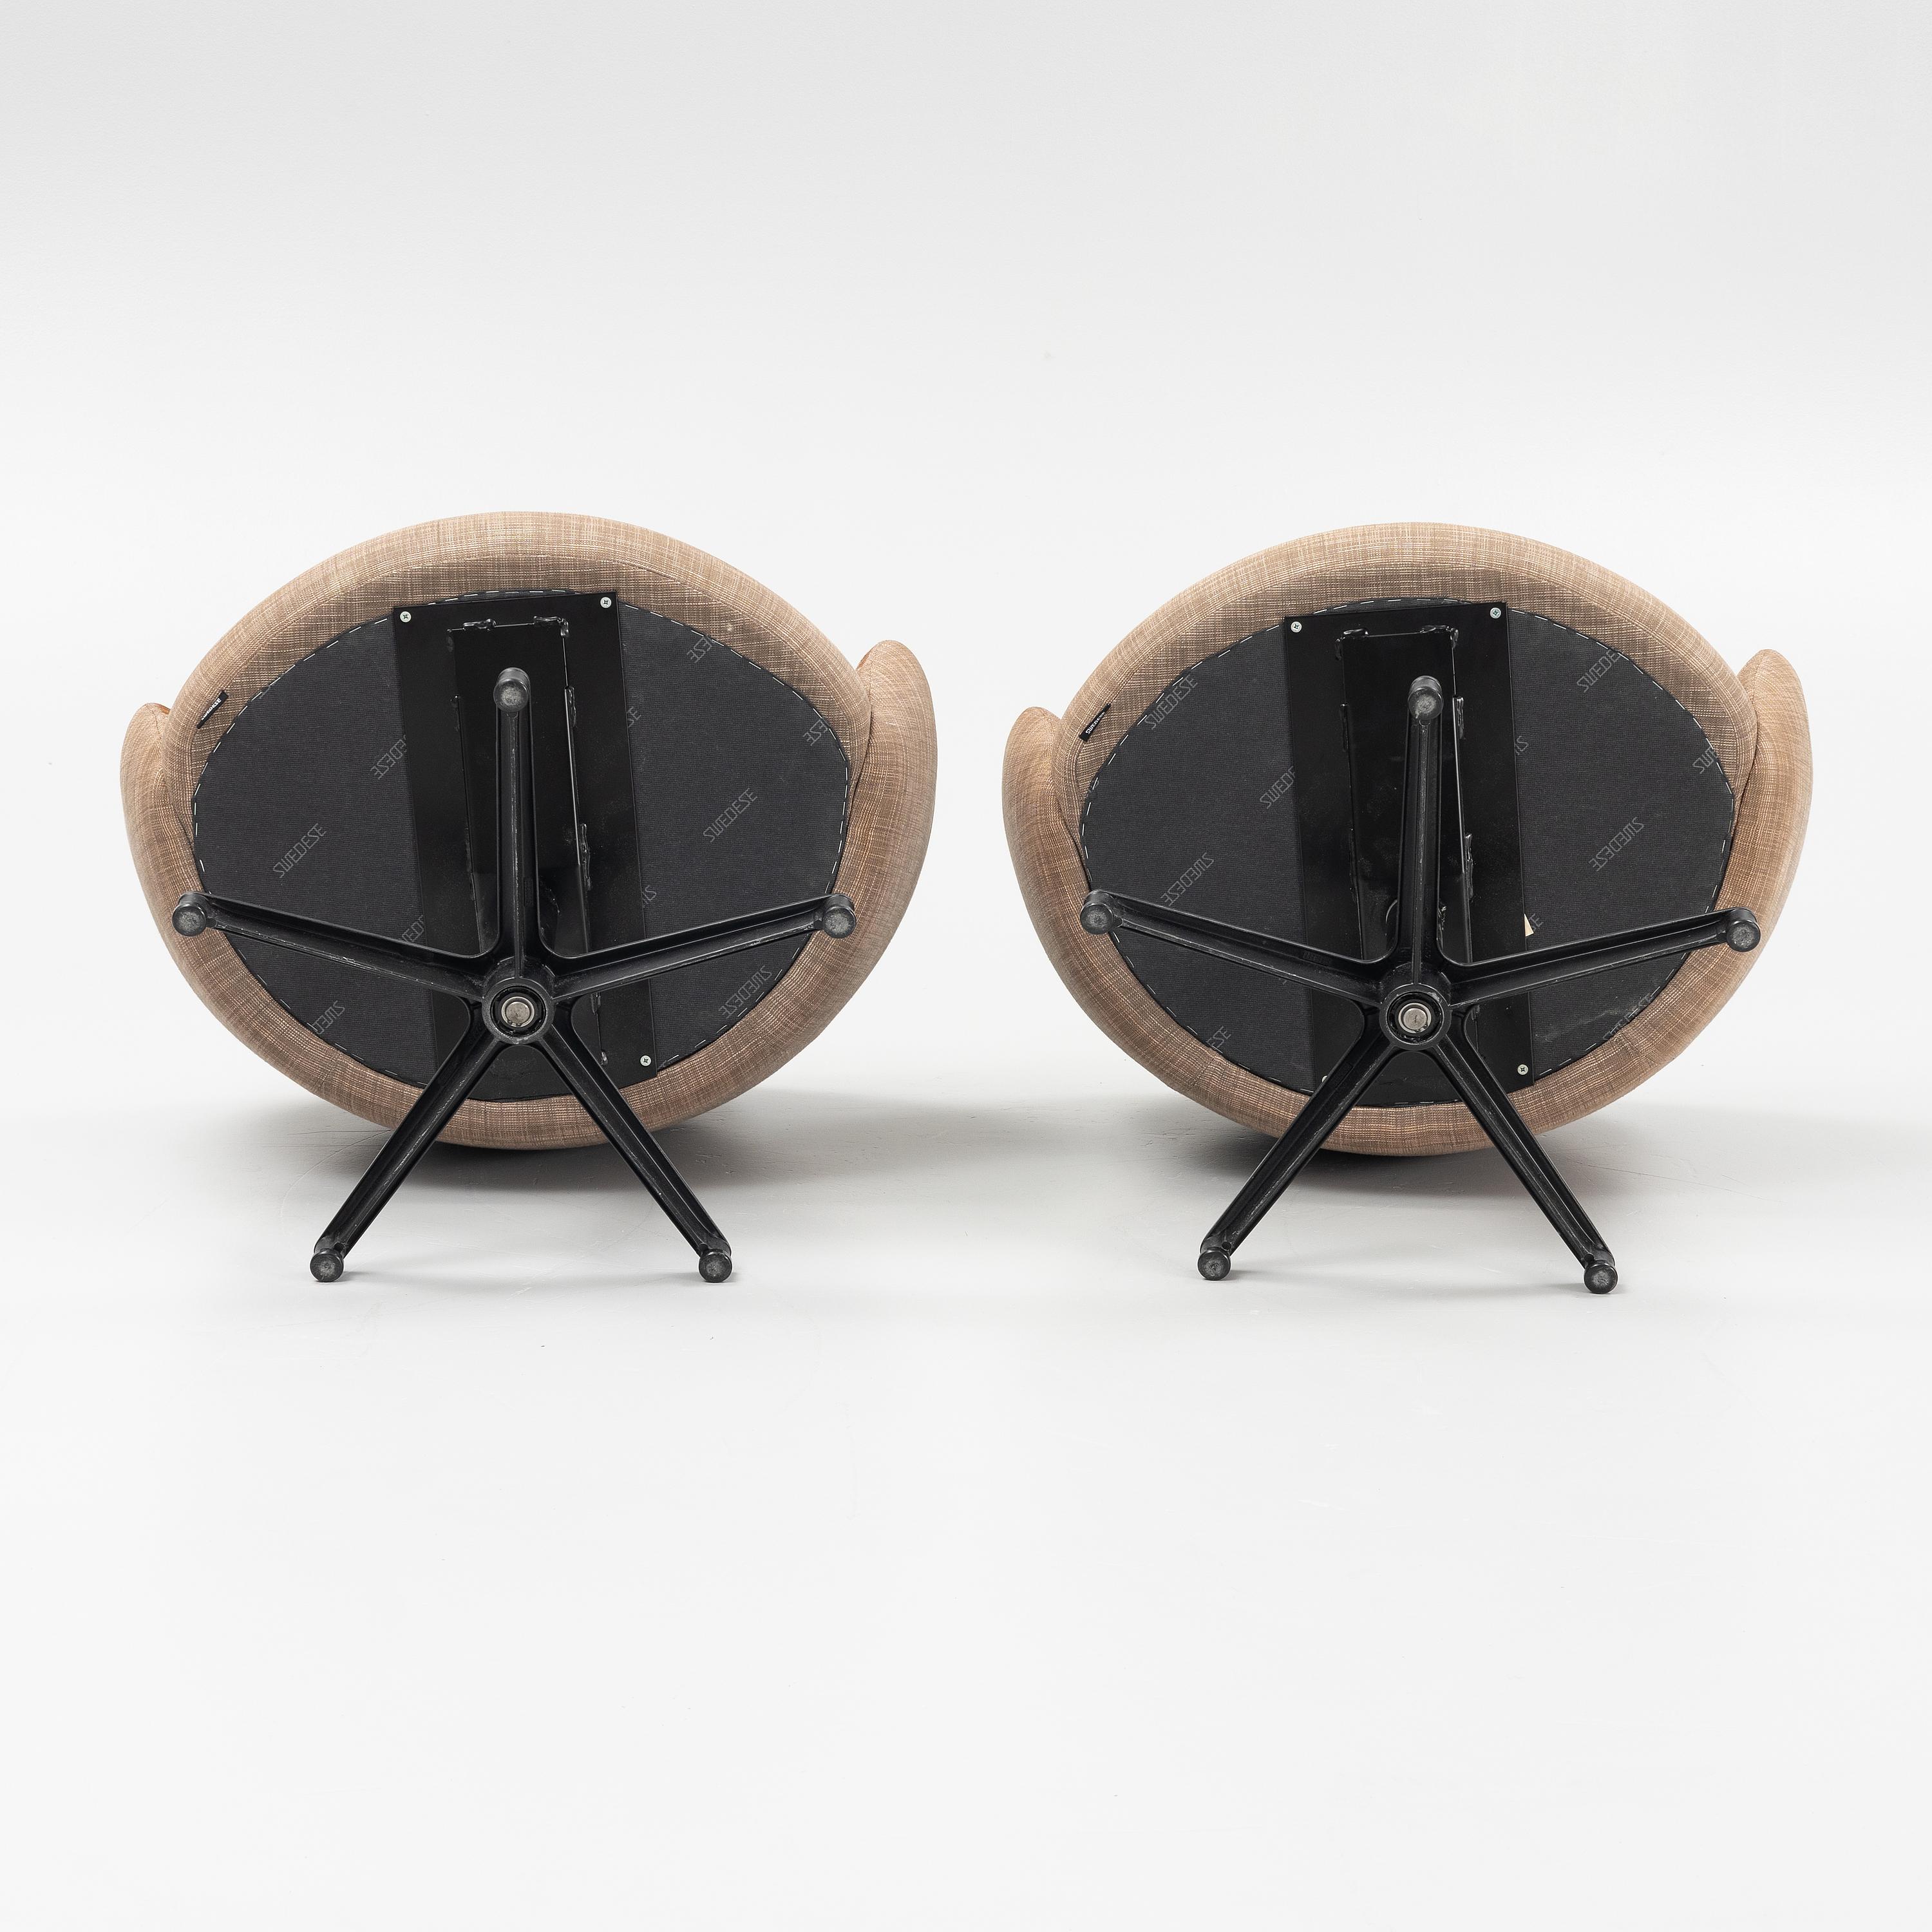 Yngve Ekström Sessel Modell  „Rondino“ für Pullover Schweden, 1970er Jahre
Struktur und Polstermöbel in gutem Zustand, aber  der Originalstoff ist gerissen und muss ersetzt werden (siehe Fotos).
Auf Wunsch können wir ihn durch den Stoff Ihrer Wahl